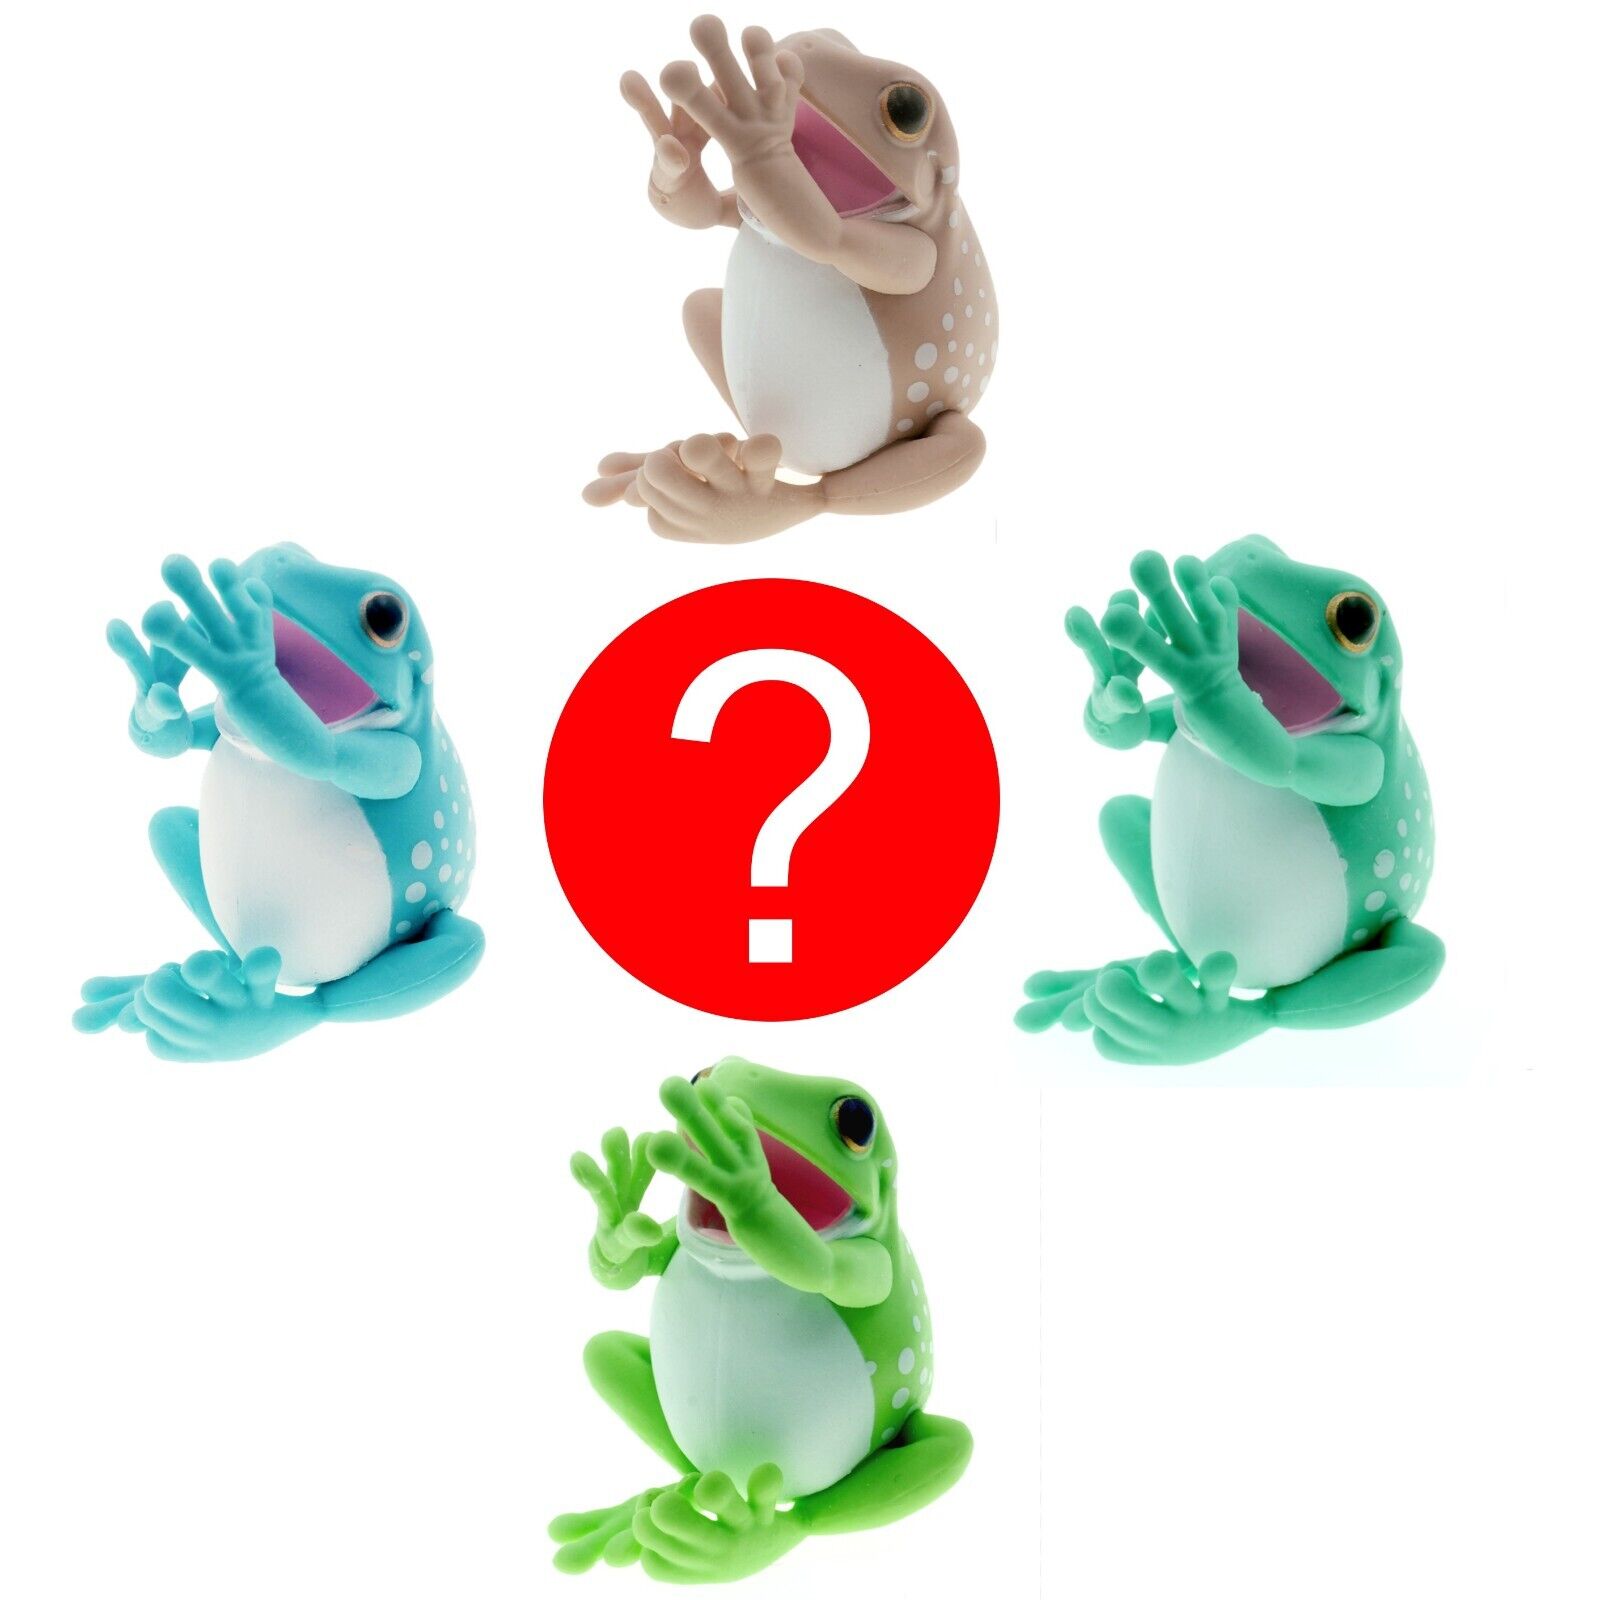 Random Australian Green Tree Frog Pen Holder Stand Desk Toy Figure Gift